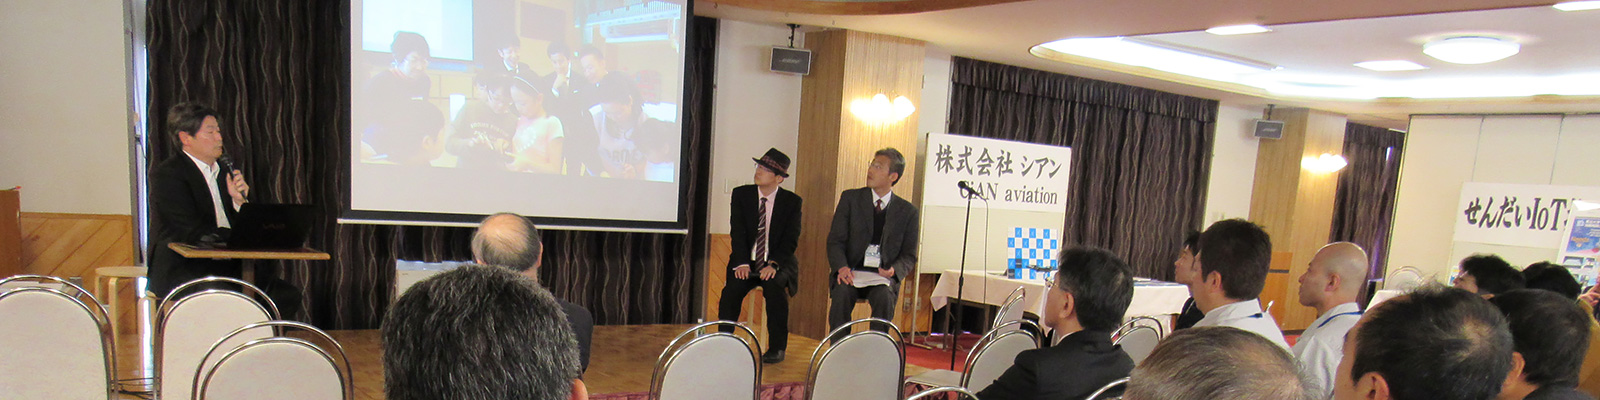 あきた芸術村にて開催された「IoT インパクトチャレンジ in 仙北」。トークセッションの様子。